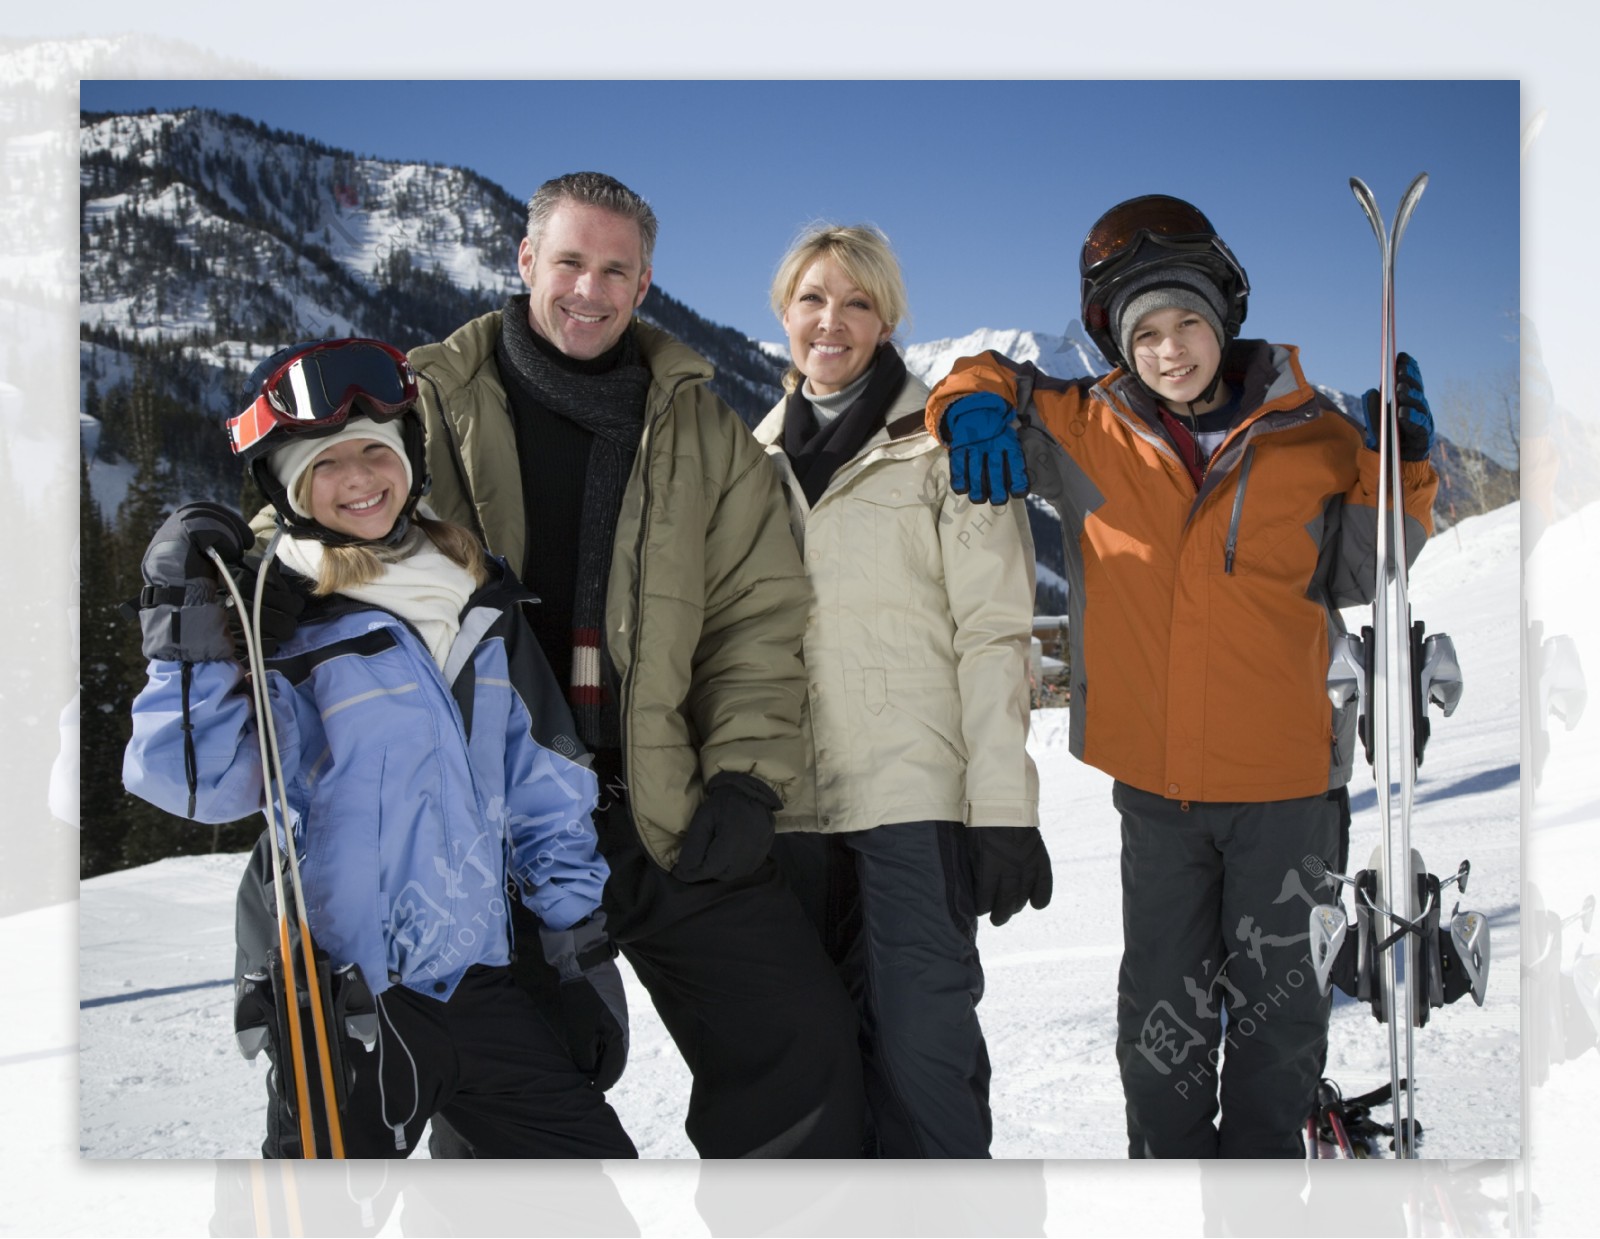 滑雪的一家人图片